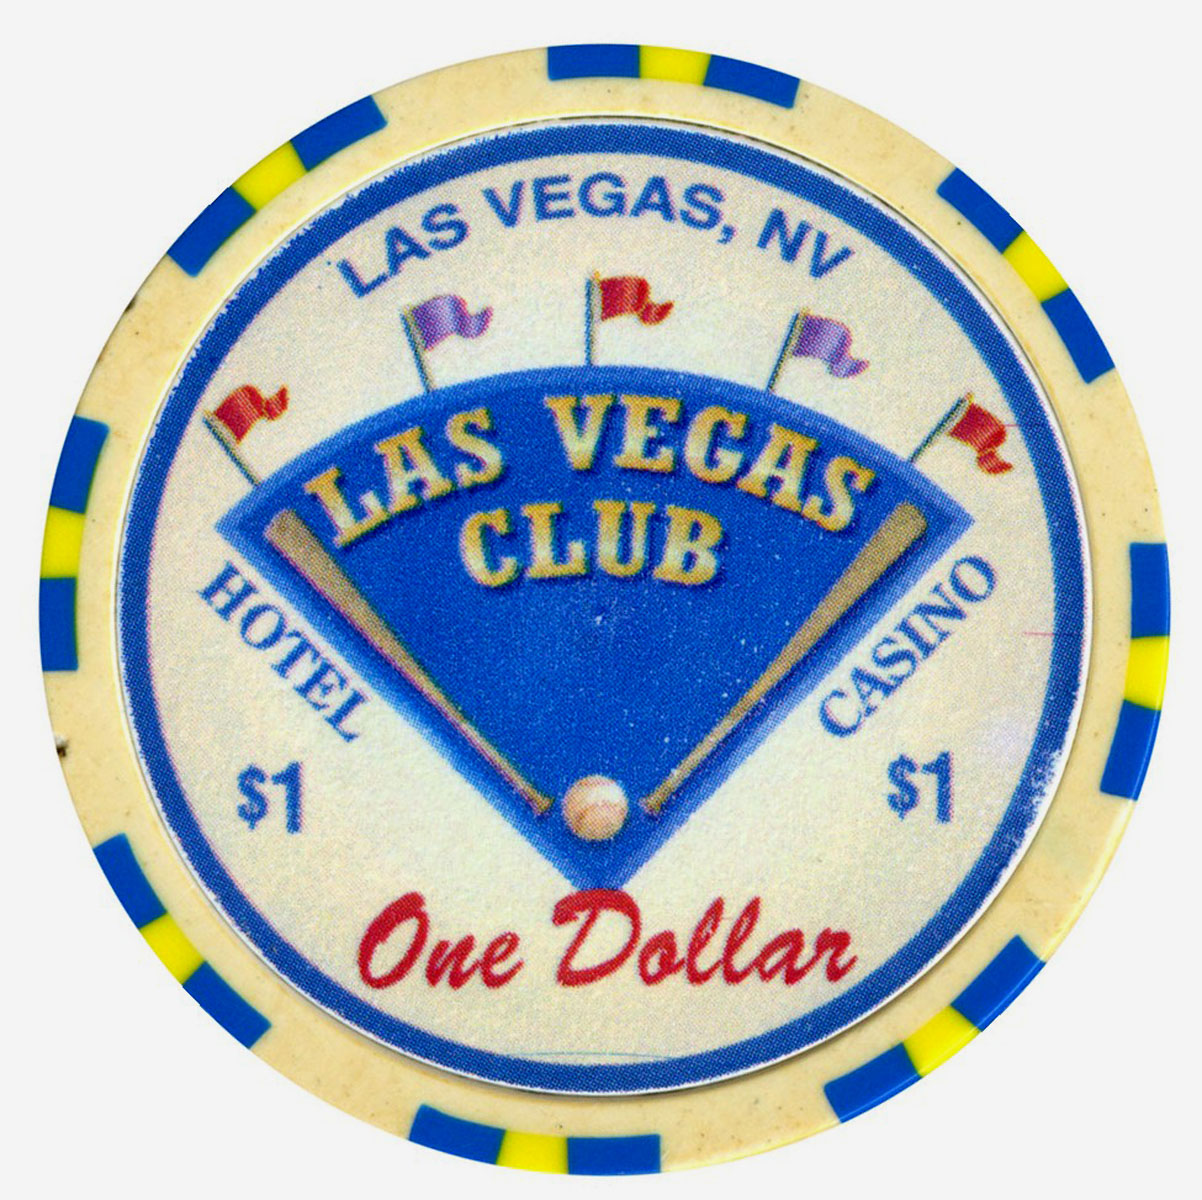 Las Vegas Club, Las Vegas, NV Casino Chip - Chipper Club - Chipper Club